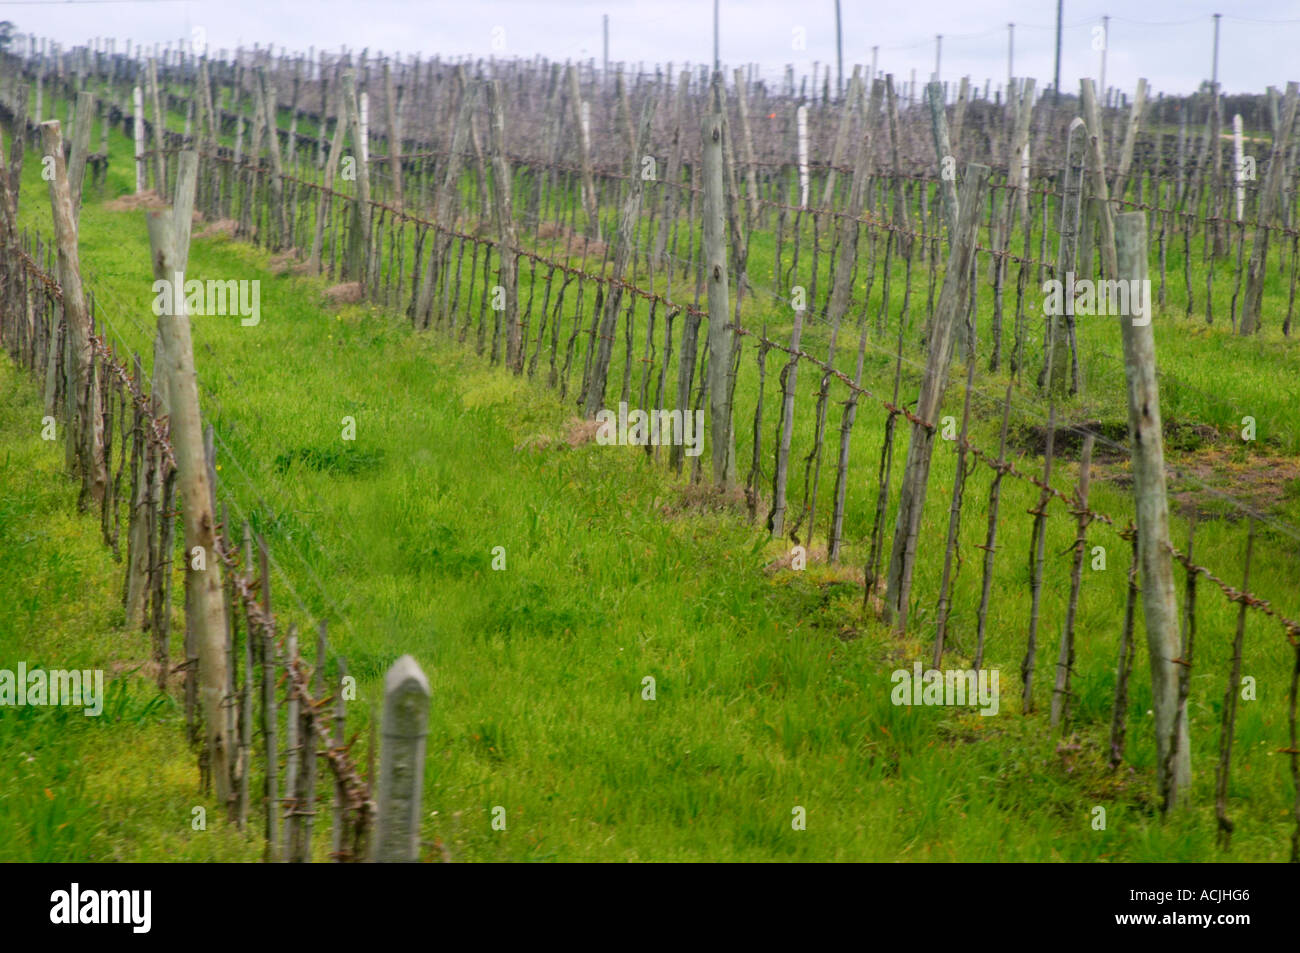 Das Weingut mit jungen Reben gepflanzt und in Cordon Royat ausgebildet. Bodega Castillo Viejo Weingut, Las Piedras, Canelones, Uruguay, Südamerika Stockfoto